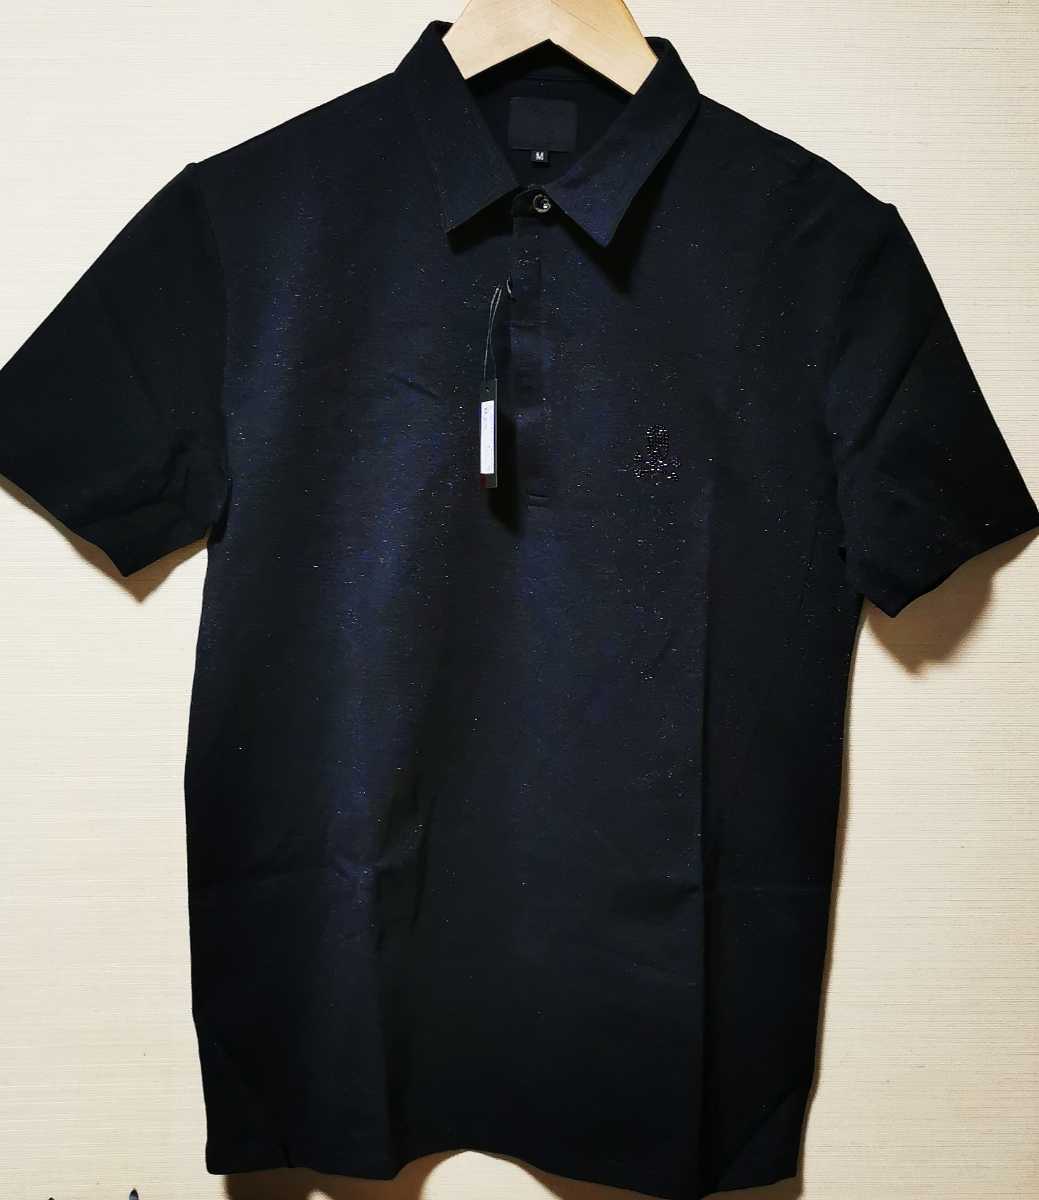 新品 タグ有 ドクロ スカル ポロシャツ tシャツ Roen ロエン M コットン ラインストーンドクロ JSD-11704P メンズ セマンティックデザイン